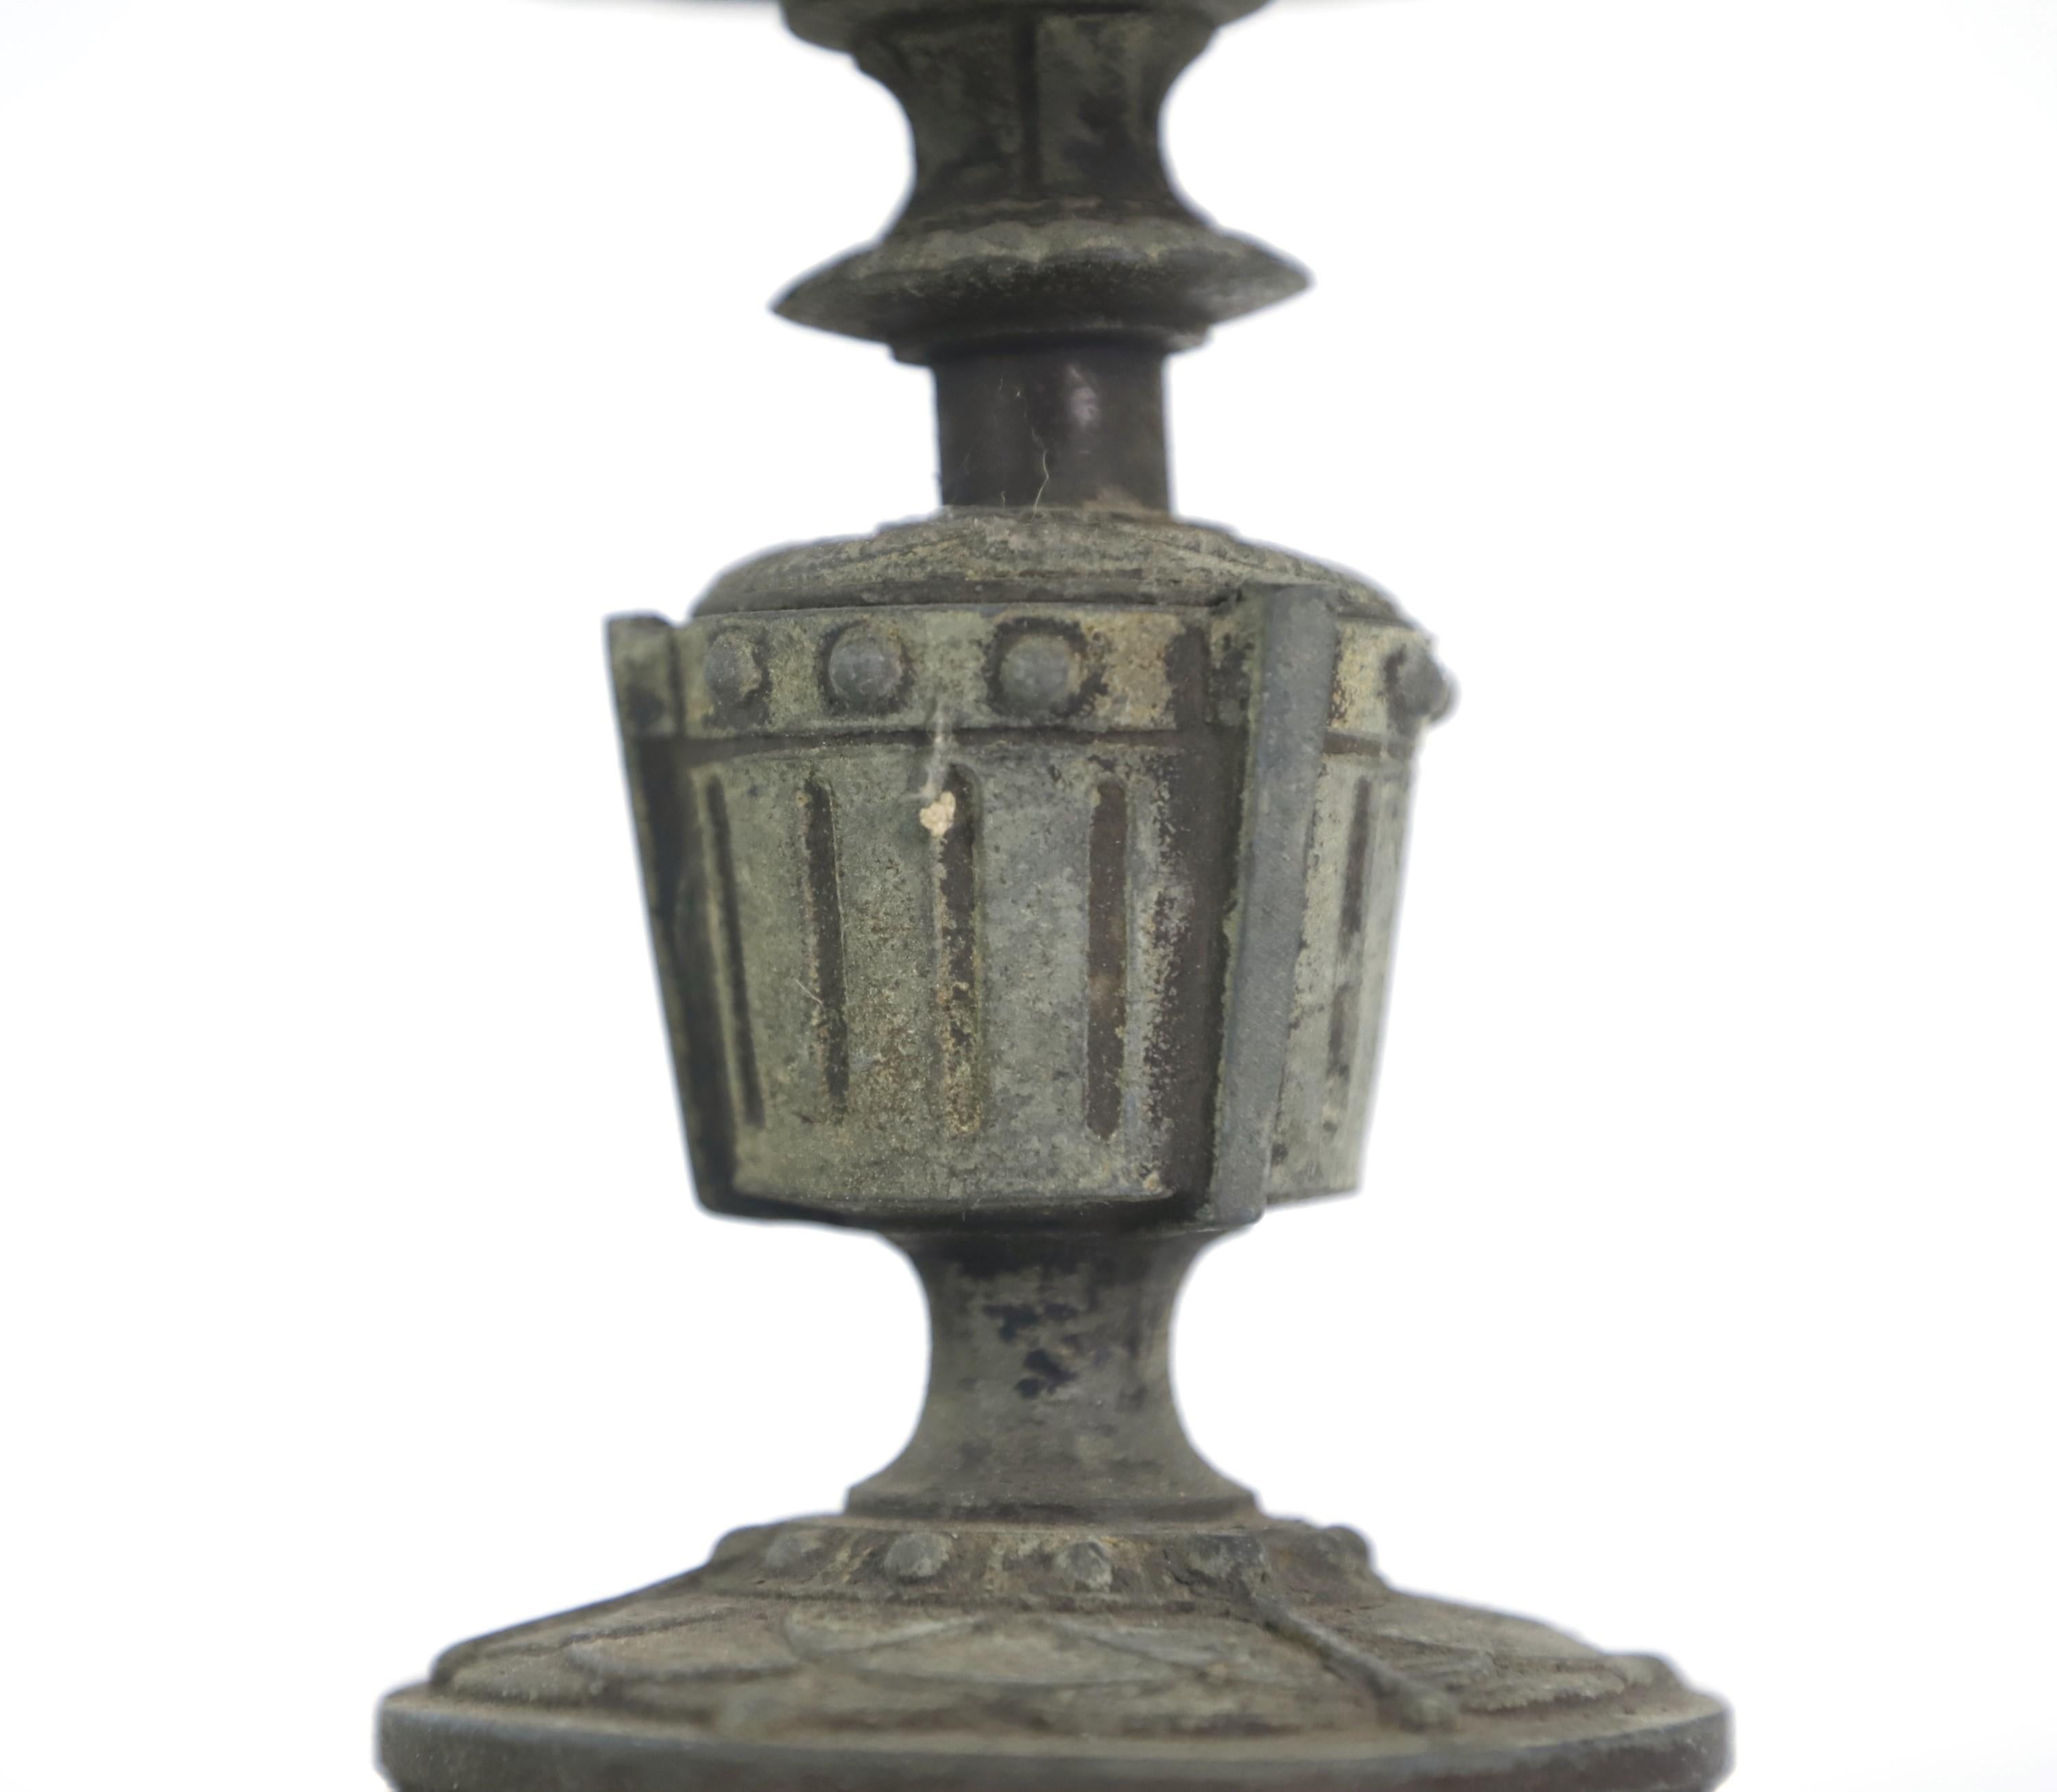 Support de lampe à huile antique français du début du 20e siècle, à trois pieds. Peut également servir de porte-bougies ou de très petite jardinière. Détails ornementaux sur le pourtour du plateau. Il est estampillé sur le fond. Patine d'origine.